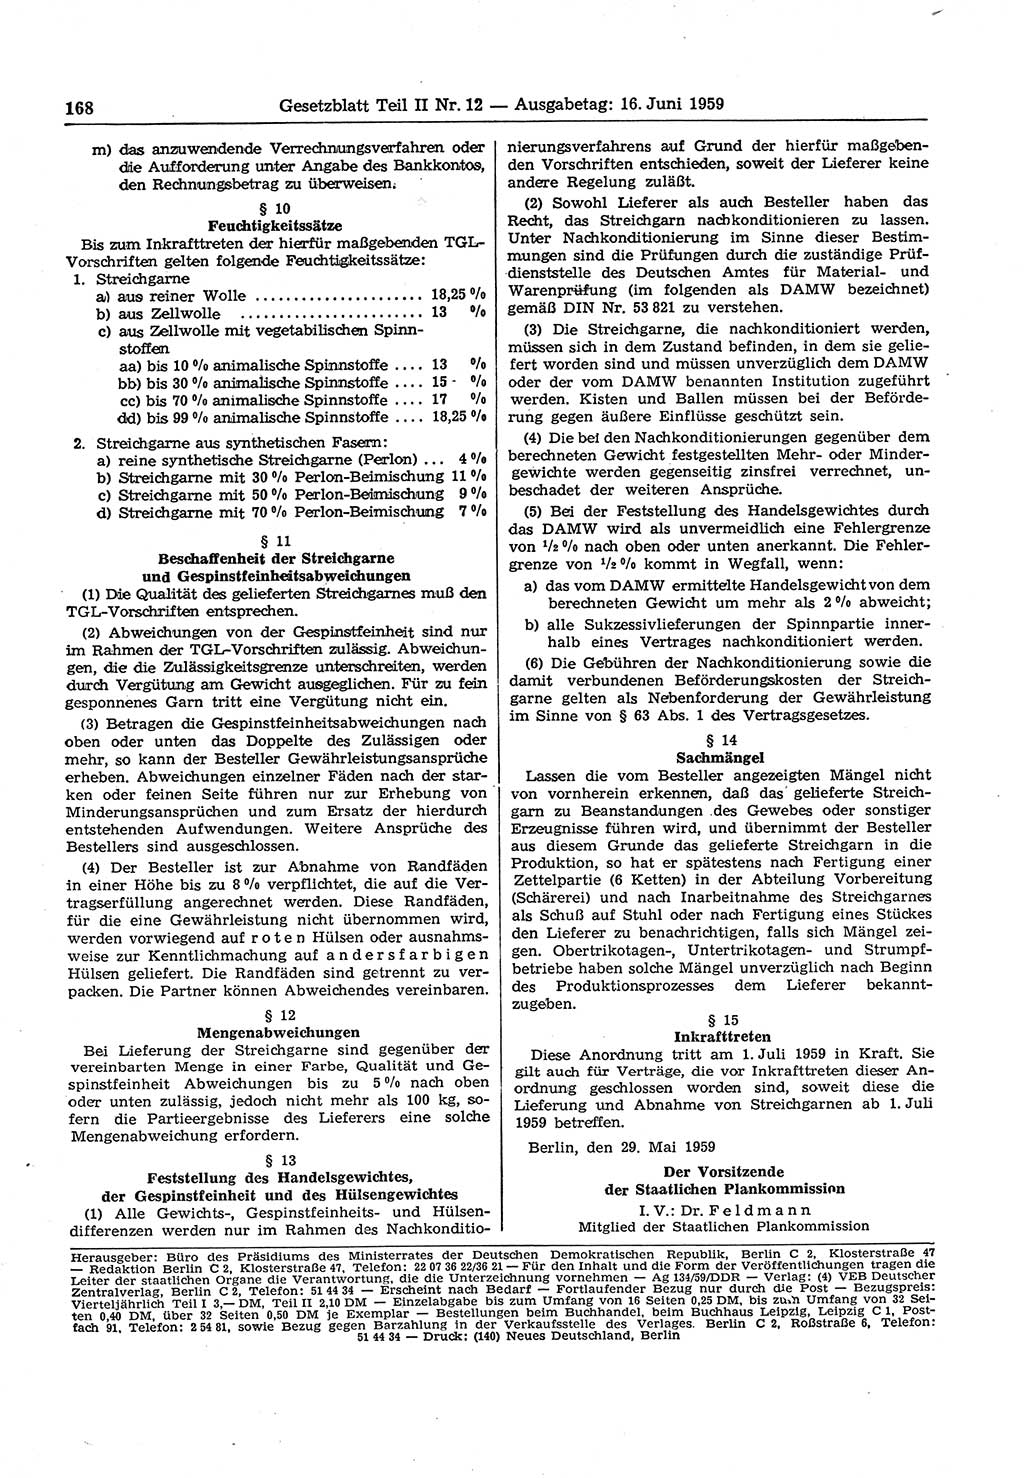 Gesetzblatt (GBl.) der Deutschen Demokratischen Republik (DDR) Teil ⅠⅠ 1959, Seite 168 (GBl. DDR ⅠⅠ 1959, S. 168)